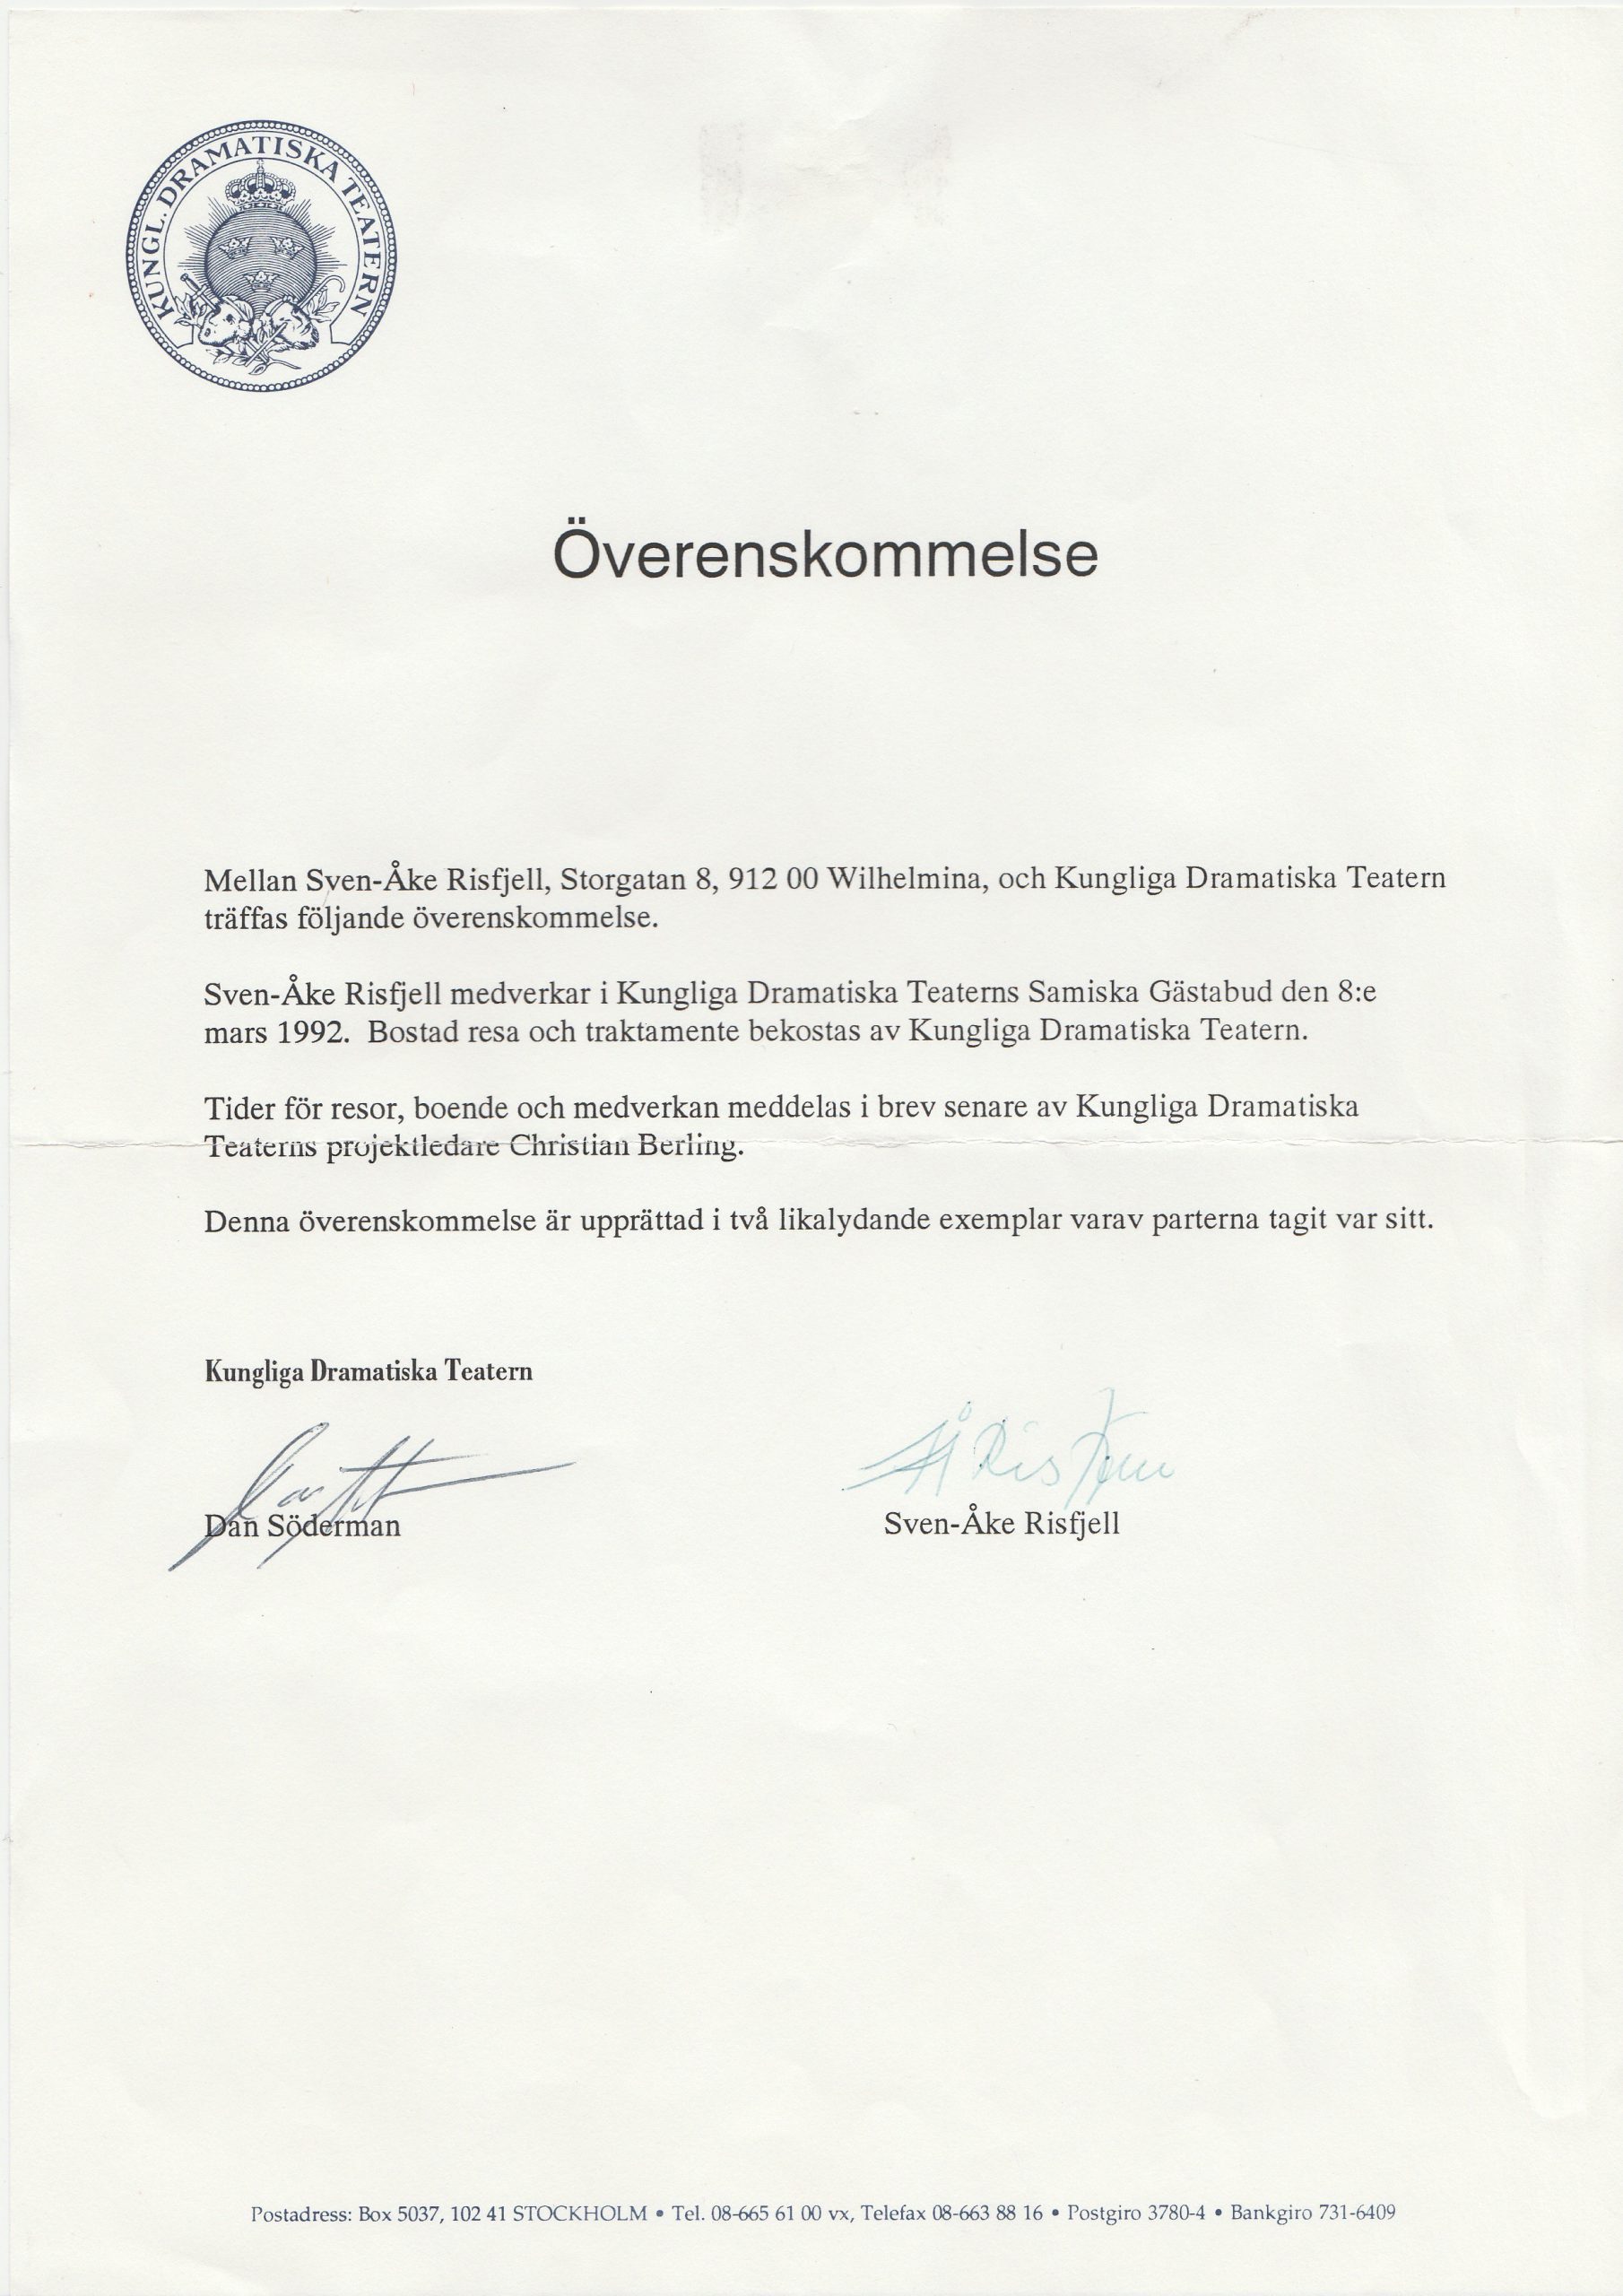 Anställningshandlingar för Sven-Åke Risfjell vid Dramatens Samiska Gästabud 1992.